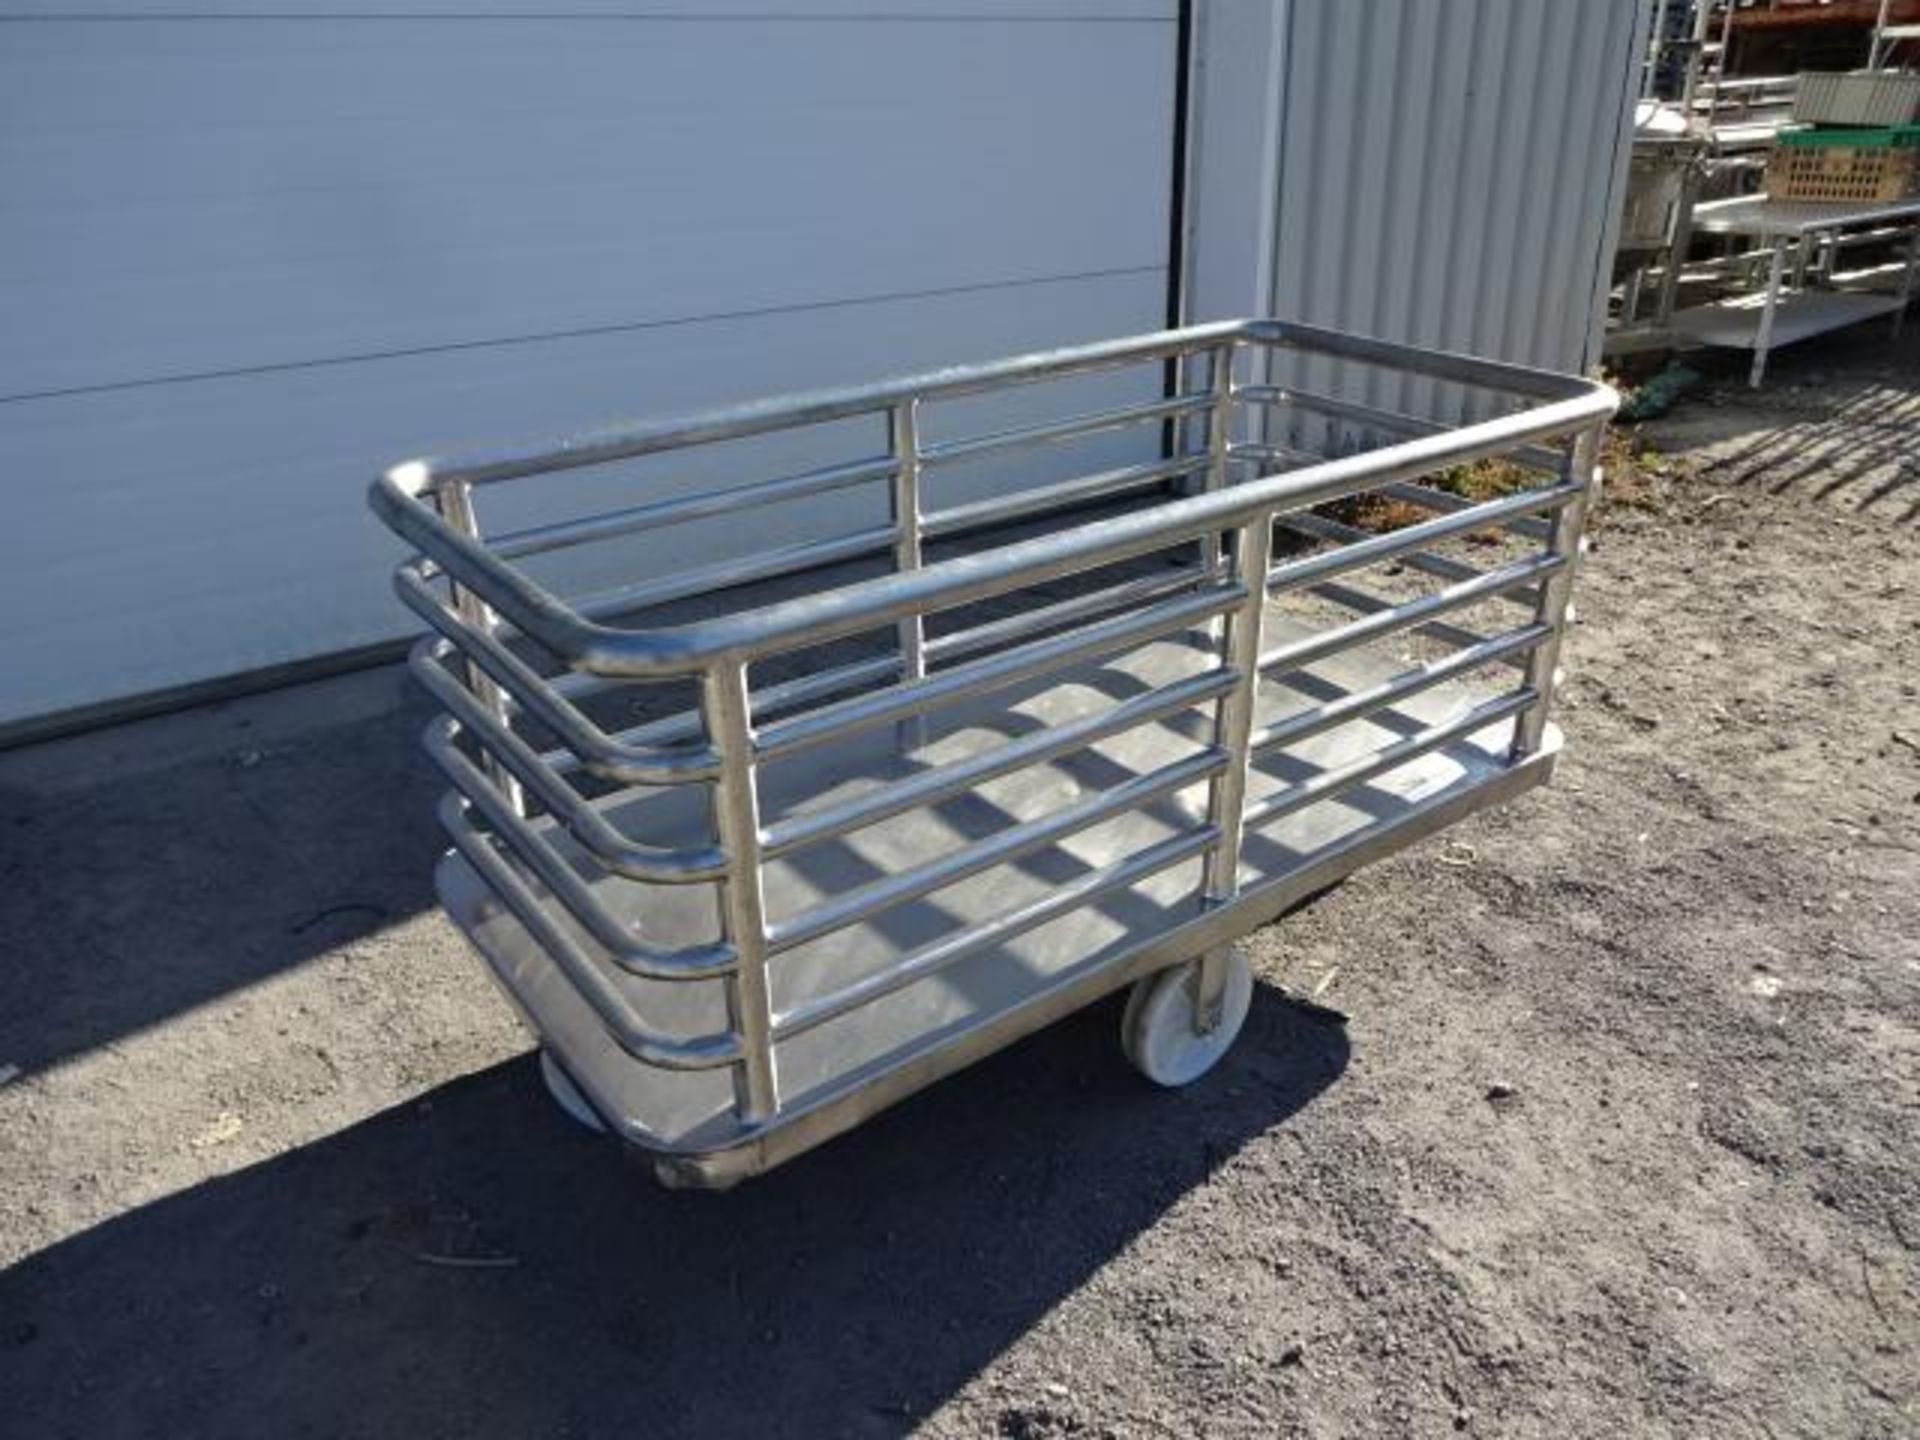 Chariots en inox - Stainless steel trolleys - Image 2 of 5